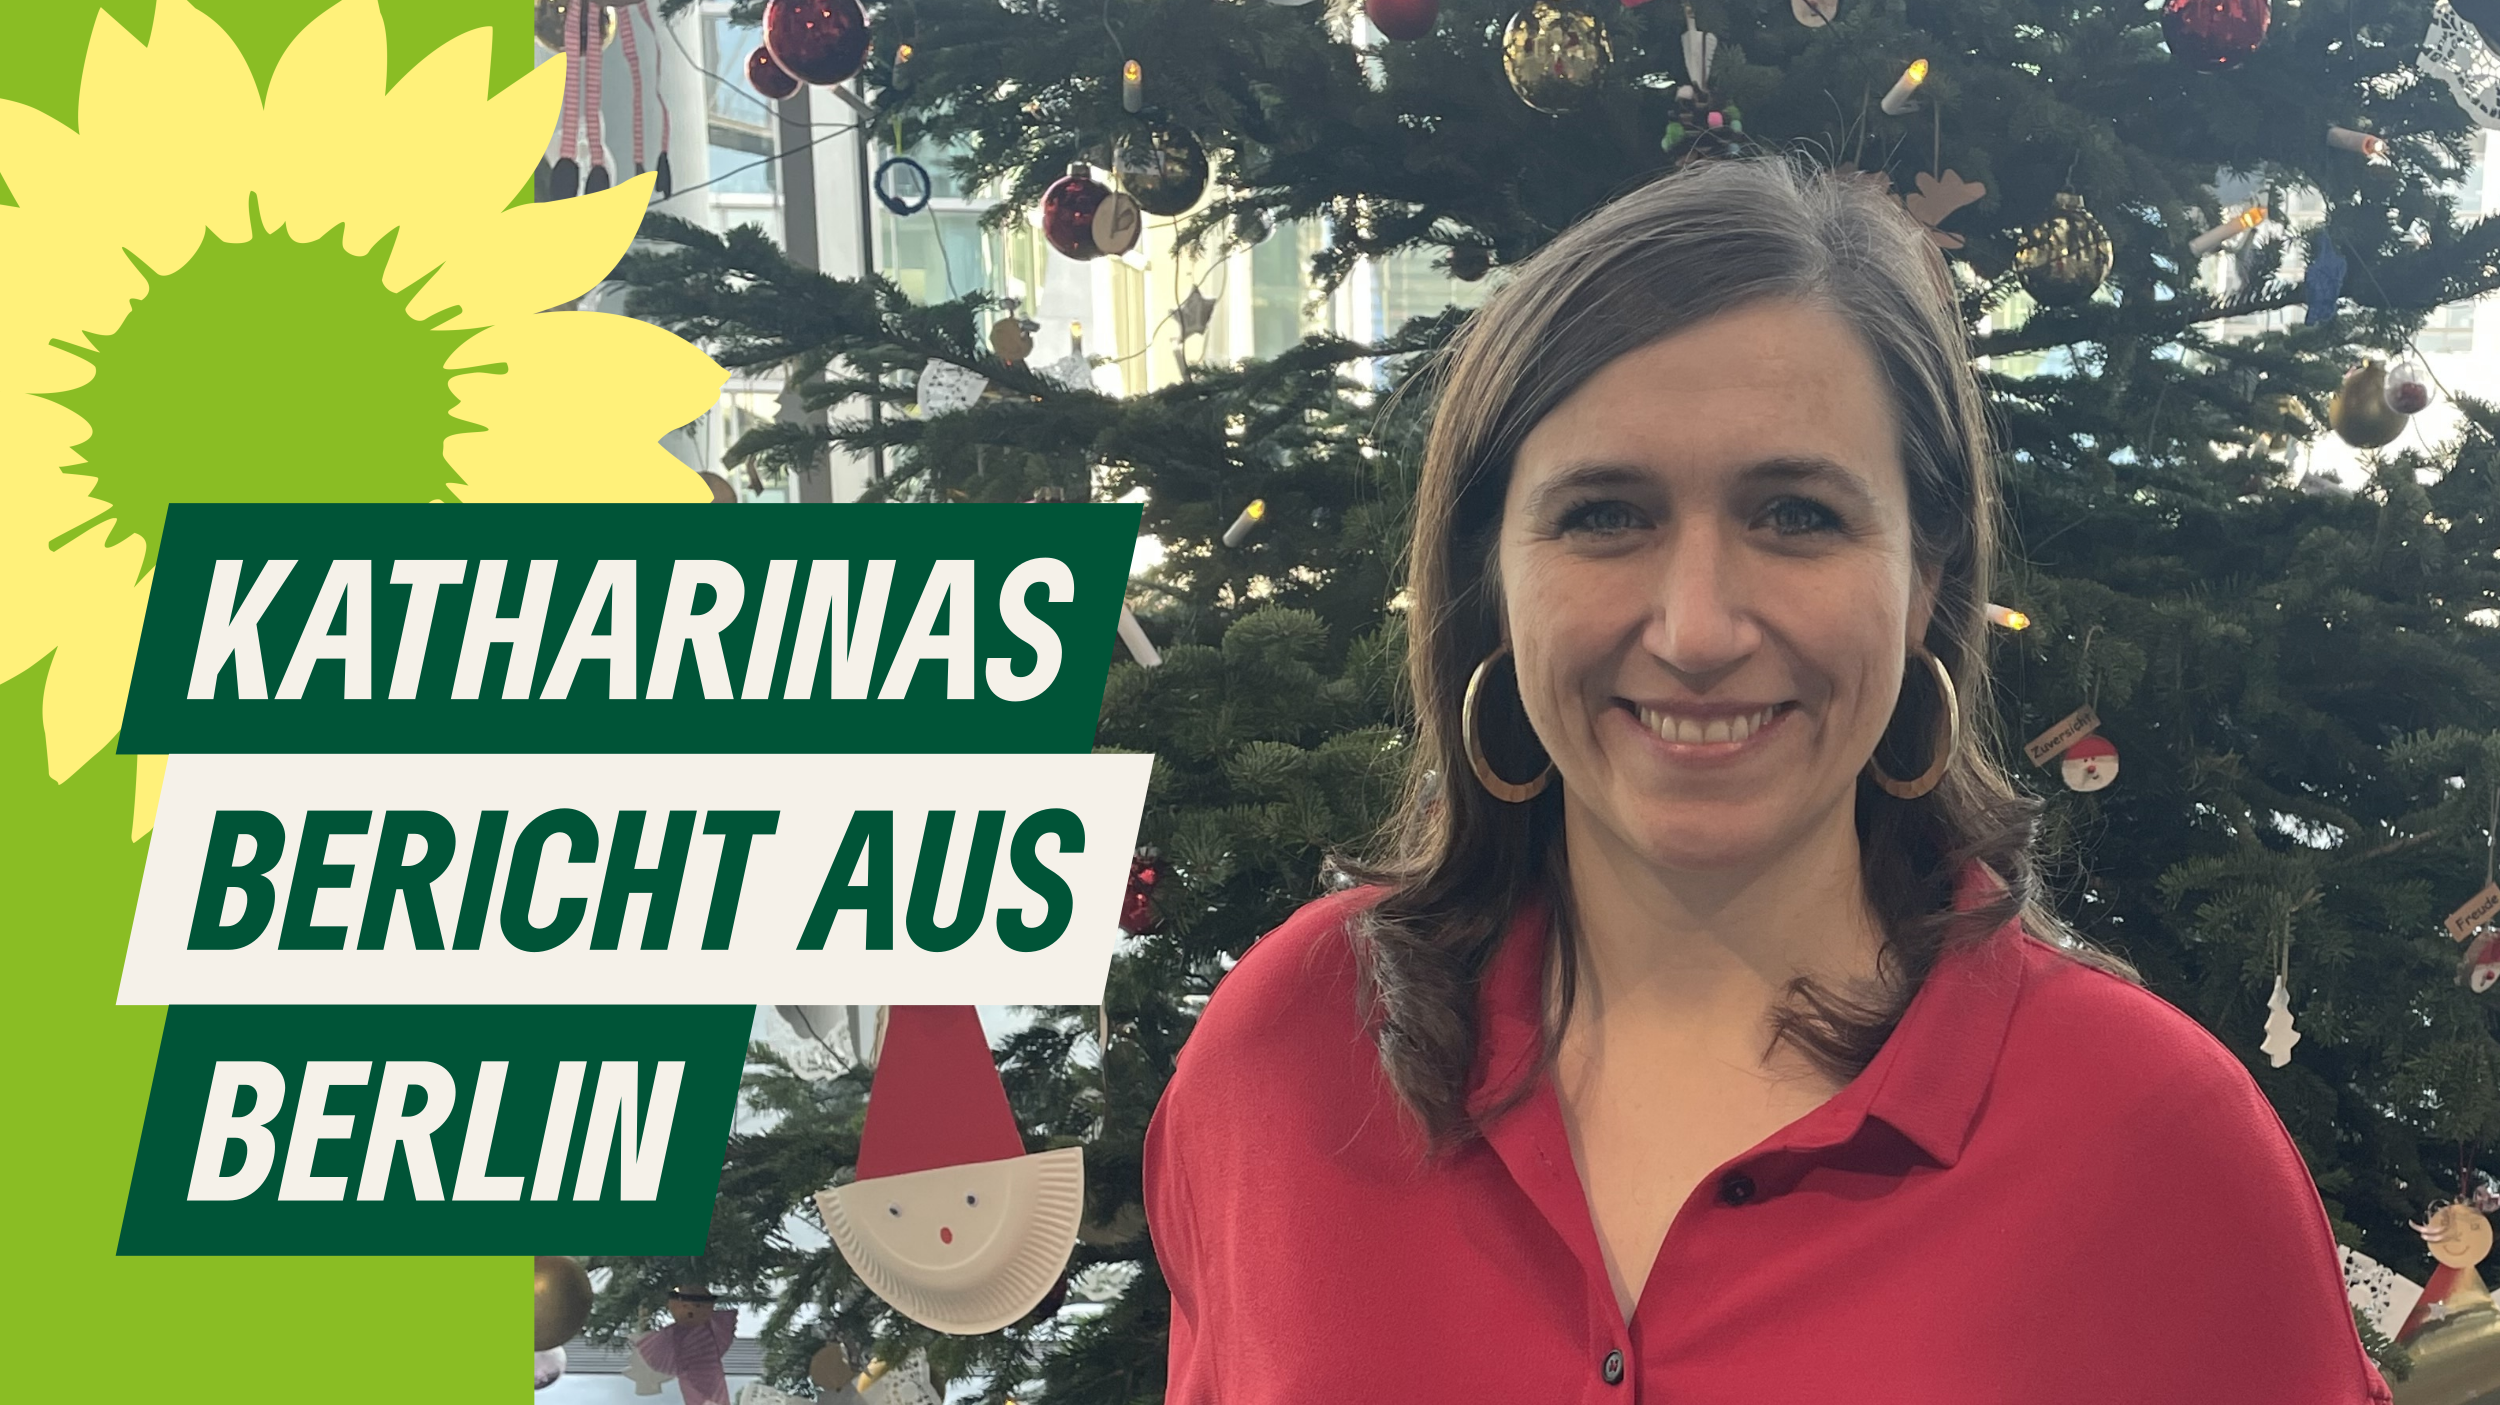 Katharina vor einem Weihnachtsbaum mit Text: Katharinas Bericht aus Berlin